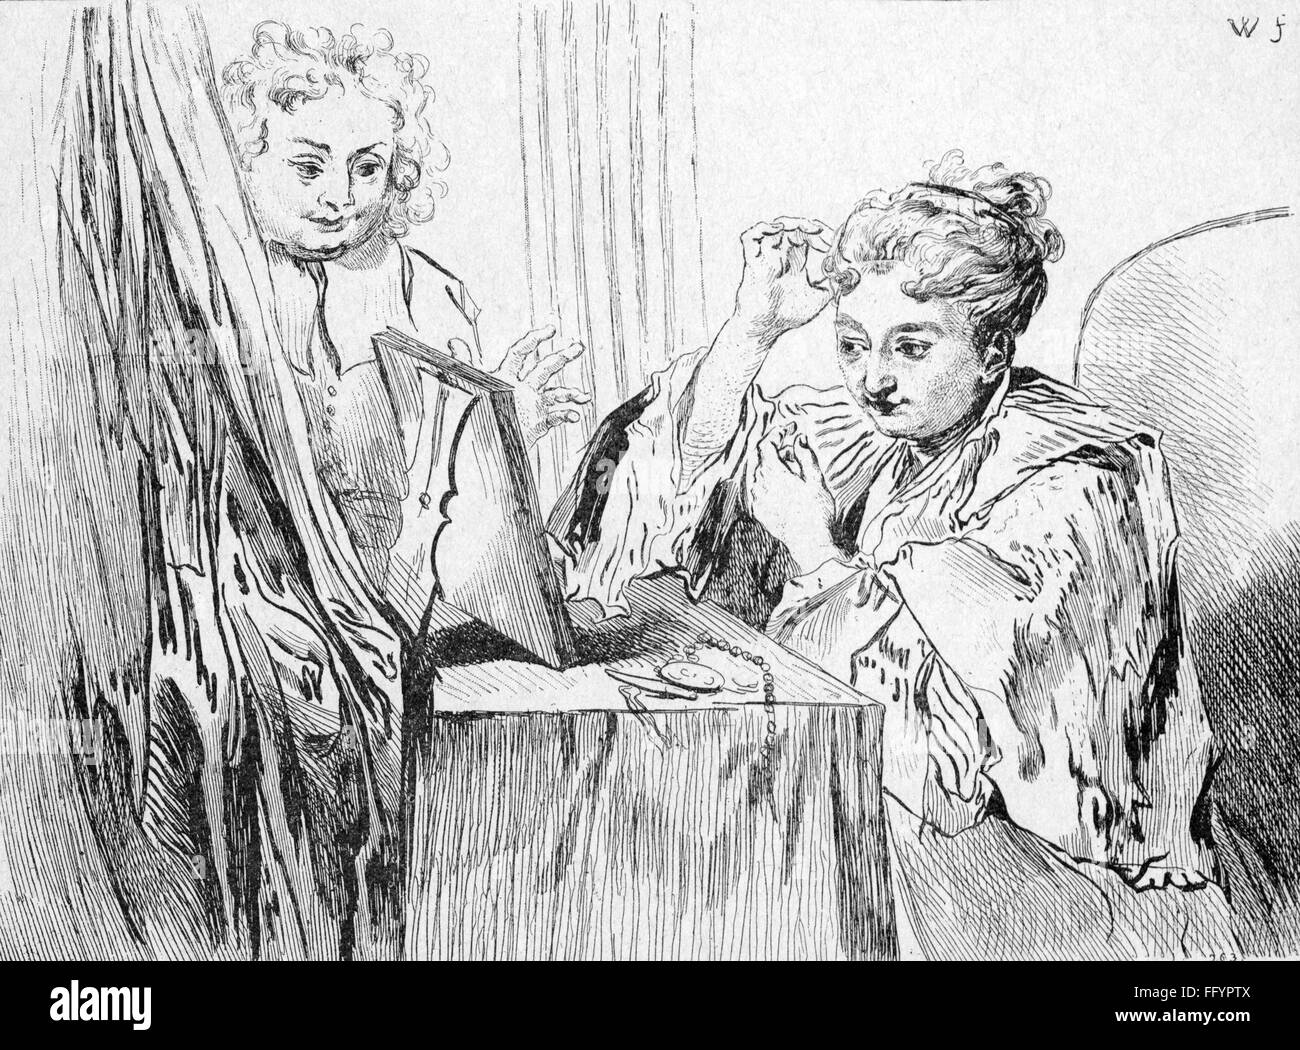 Cosmétiques, femme à la table de maquillage, ajuster ses cheveux, dessin par Antoine Watteau (1684 - 1721), 18e siècle, 18e siècle, graphique, graphiques, demi-longueur, assis, assis, table de maquillage, coiffeuse, tables de maquillage, coiffeuses, miroir, miroirs, cheveux, style de cheveux, coiffure, coiffures, coiffures, coiffures, coiffures, coupes de soins, cheveux, cheveux, cheveux, cheveux, cheveux, cheveux, cheveux coupés, cheveux, cheveux, cheveux, cheveux, cheveux, cheveux cape, capes, études, étude, cosmétiques, cosmétiques, historique, historique, femme, femme, droits additionnels-Clearences-non disponible Banque D'Images